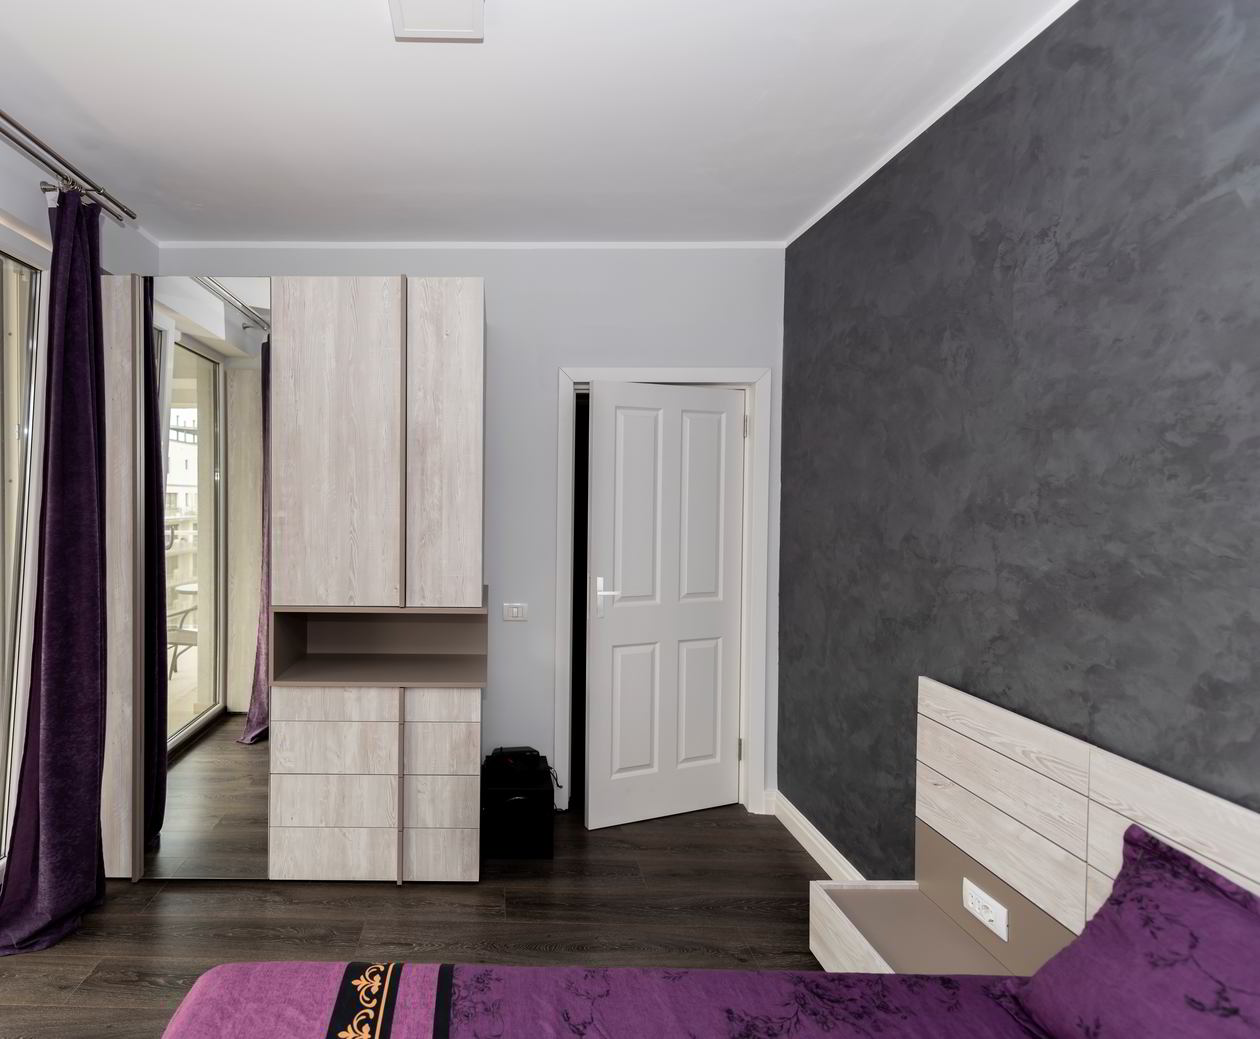 Apartament cu 2 camere, pentru inchiriat in regim hotelier in Constanta, Mobilat integral, 01 Martie 2018 COD.13112